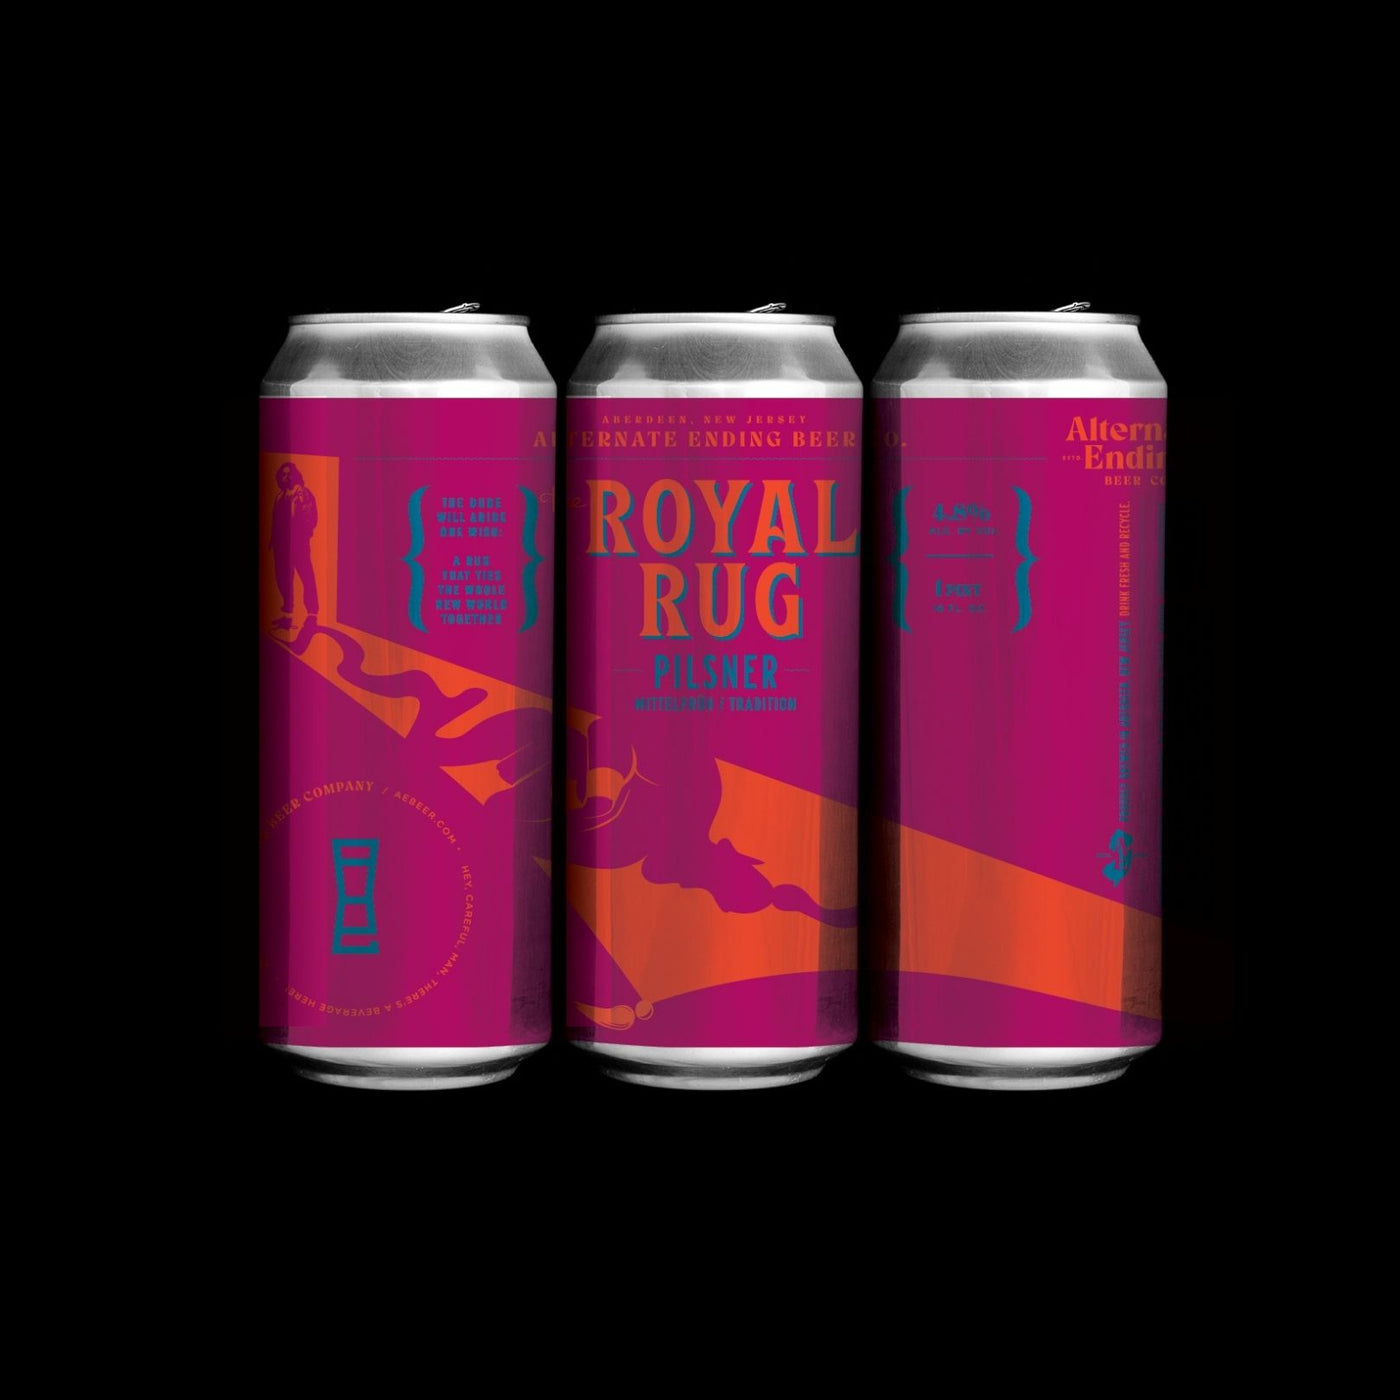 The Royal Rug